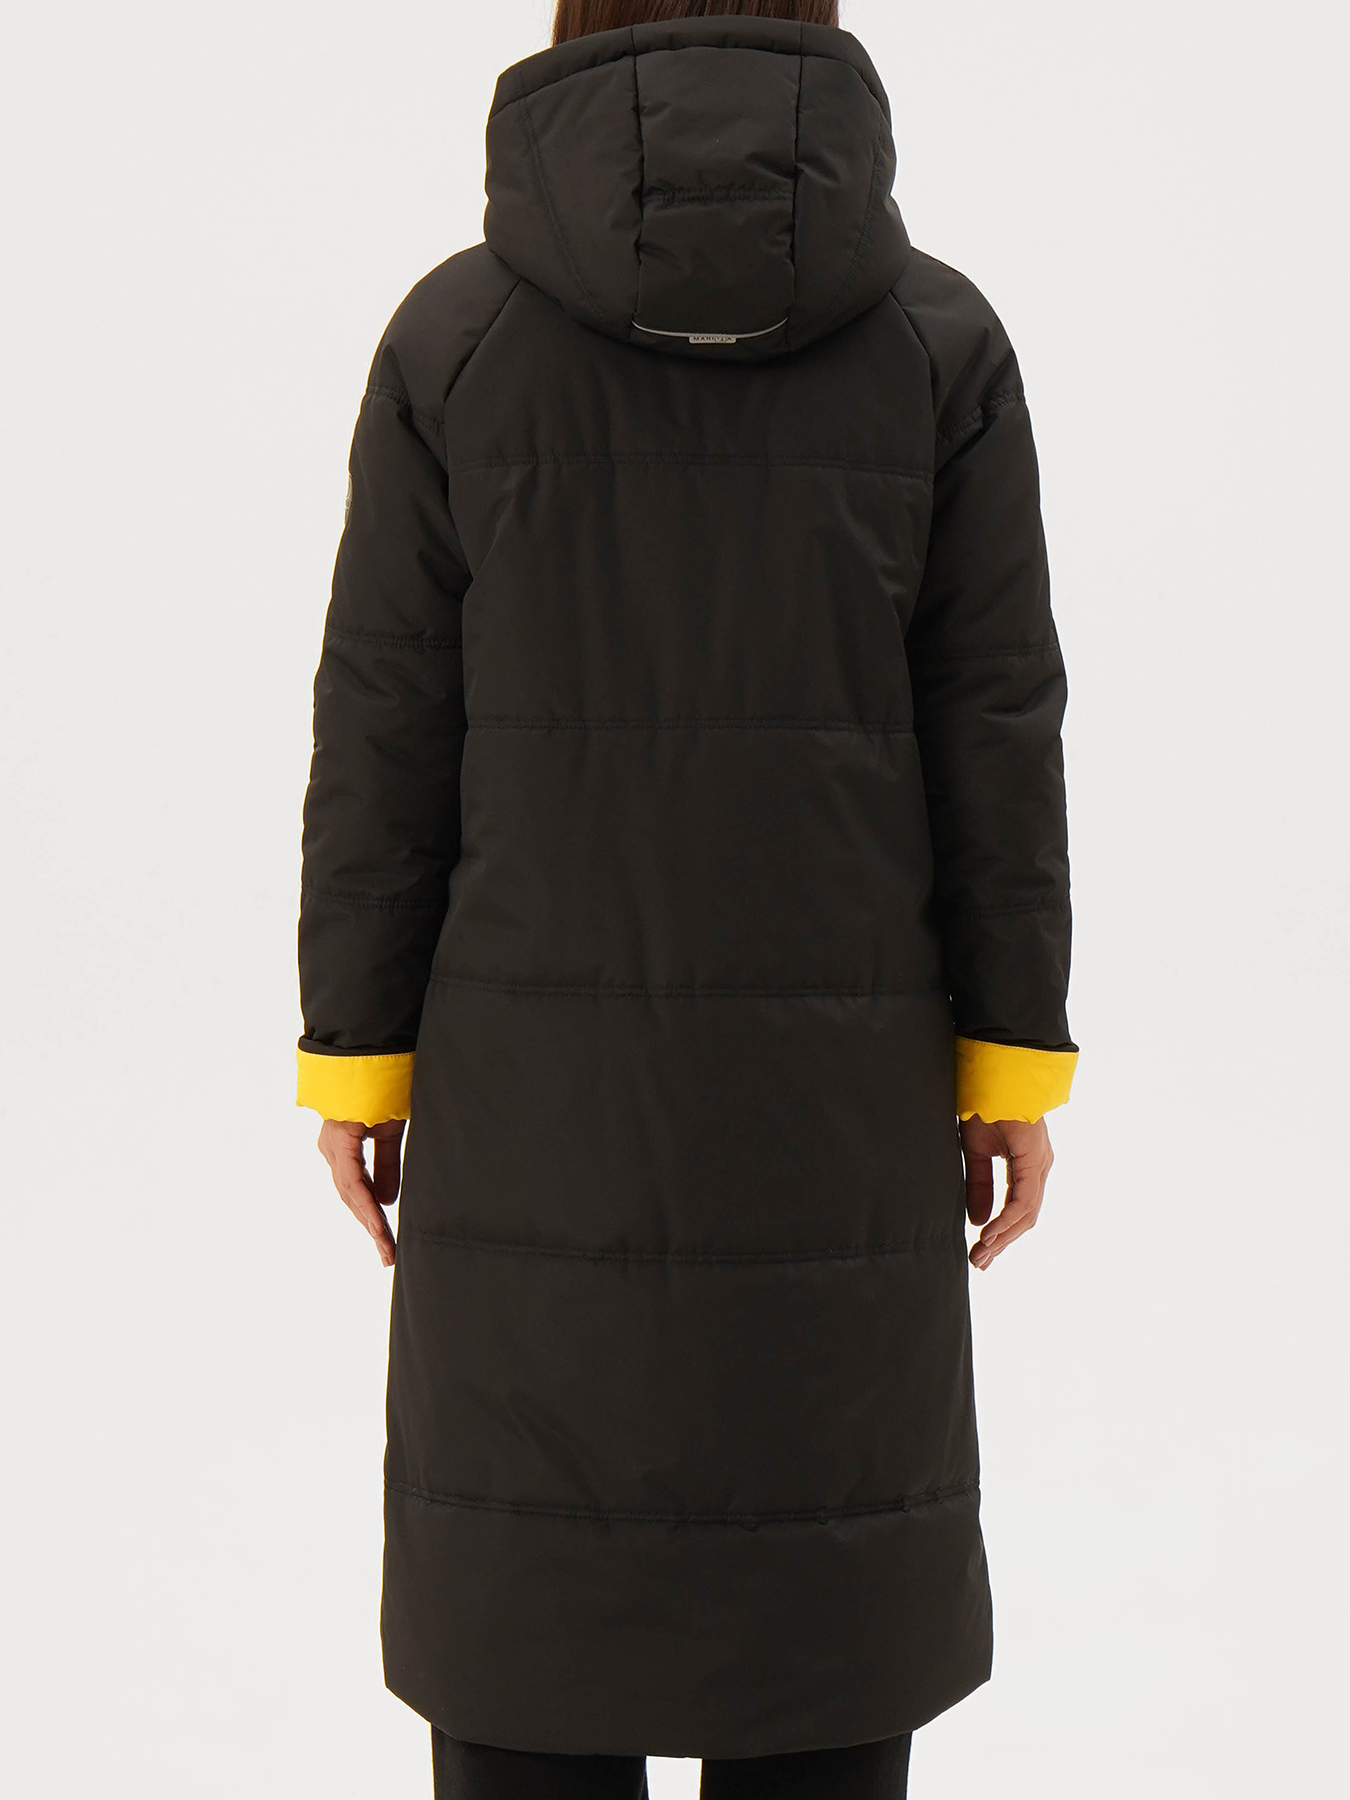 Пальто зимнее Maritta 433538-025, цвет черный, размер 48 - фото 2